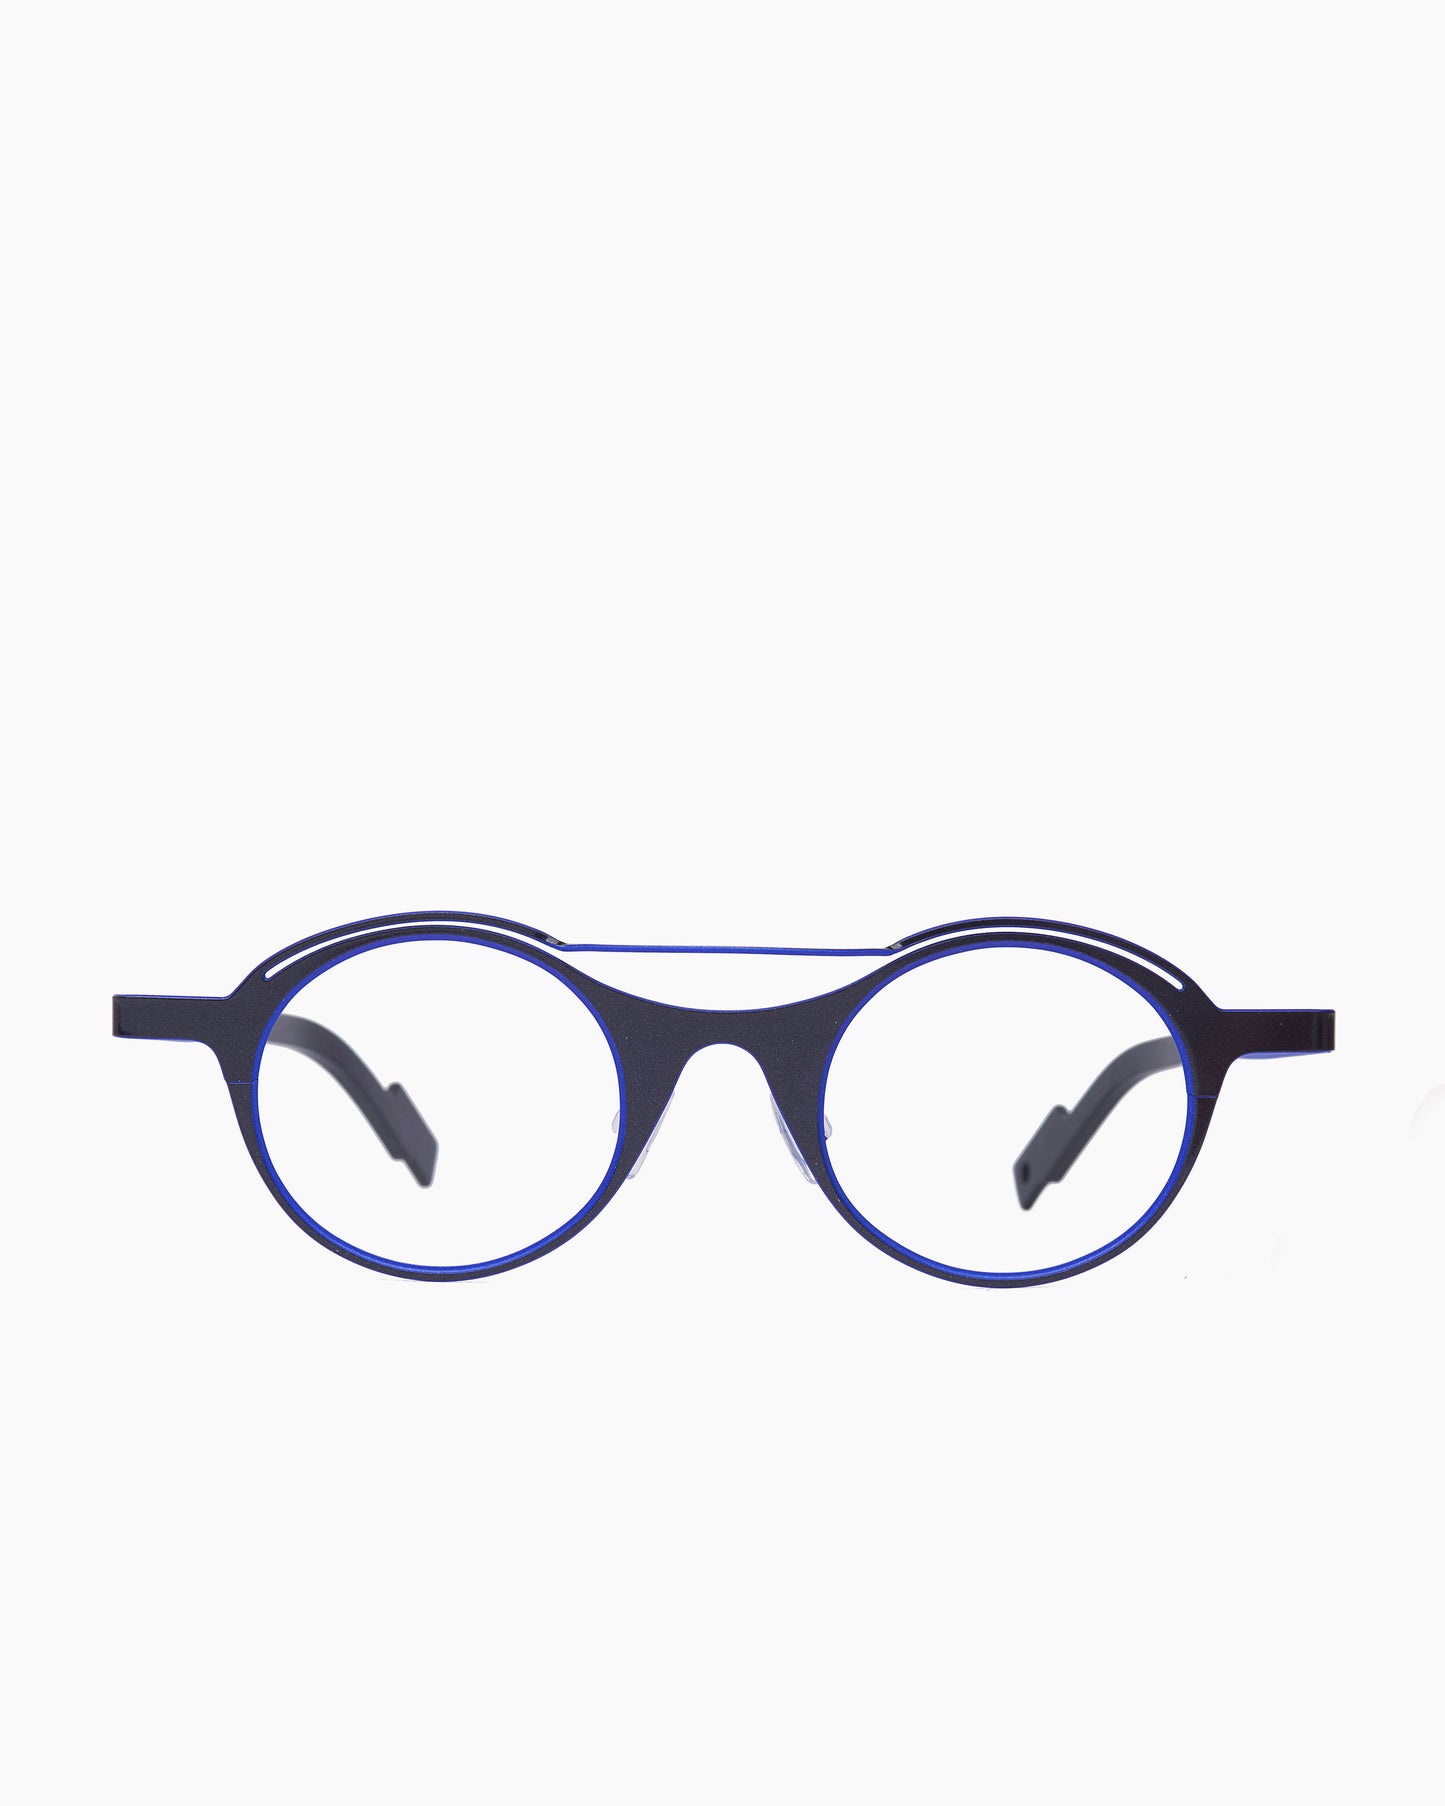 Theo - Cut - 462 | glasses bar